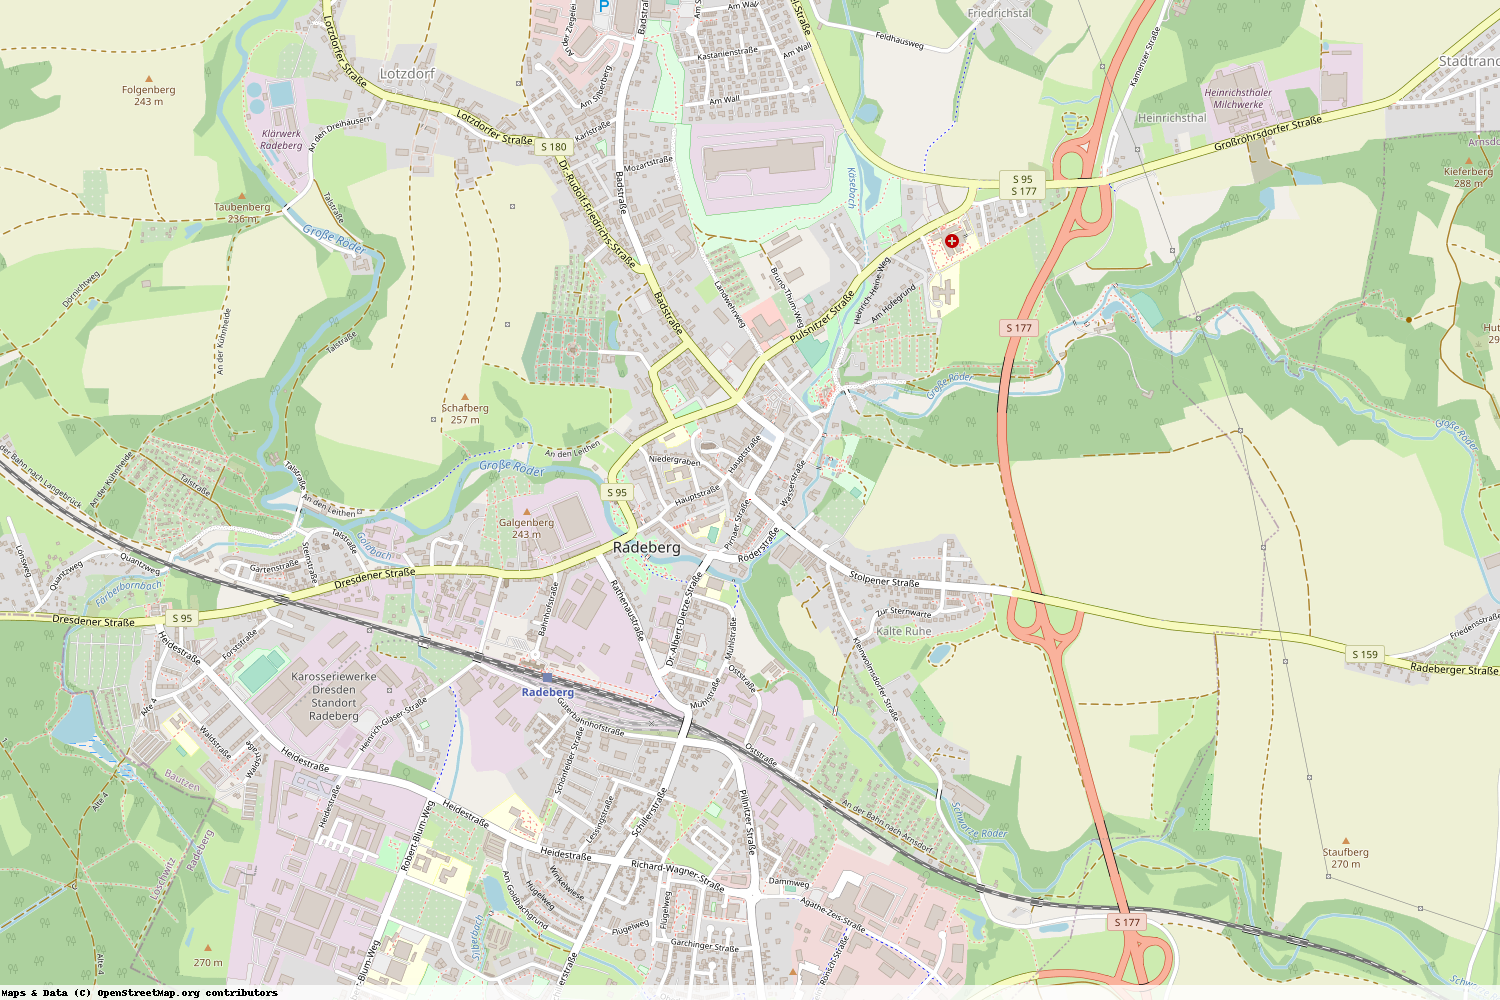 Ist gerade Stromausfall in Sachsen - Bautzen - Radeberg?